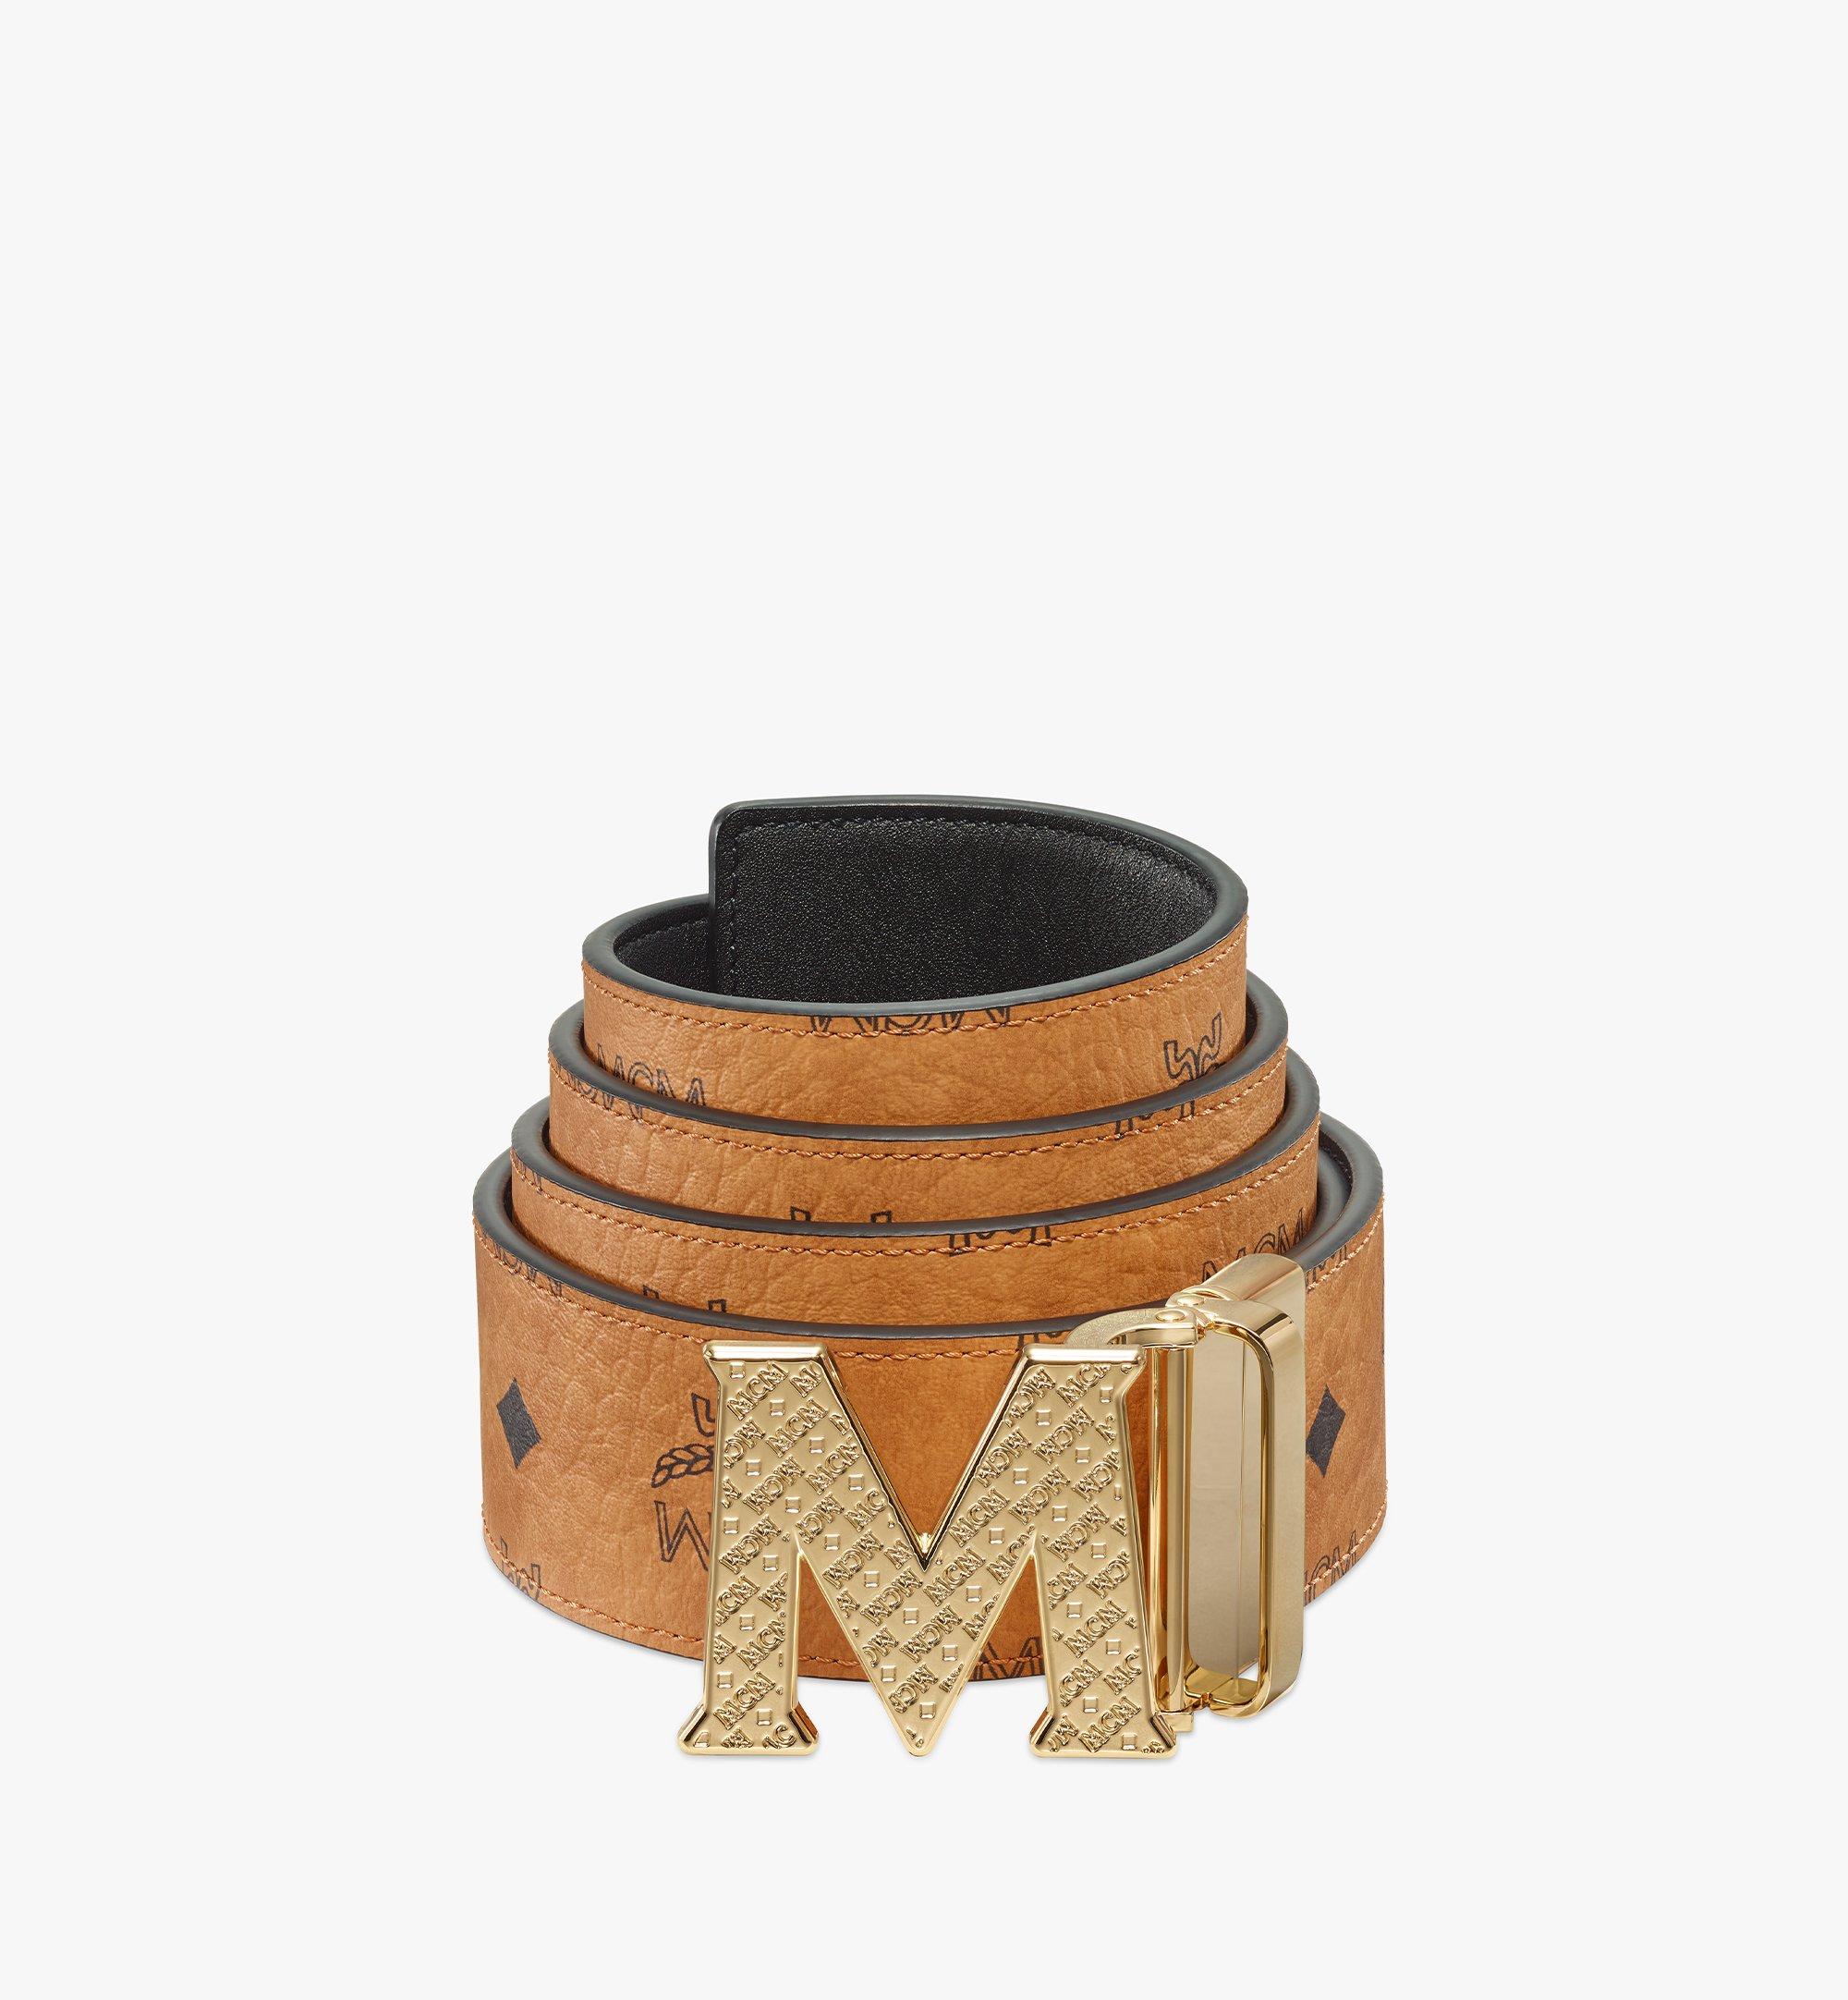 MCM Red Belt - Designer Belts - Timeless Kicks  Bristol Boutique for  Sneakers, Handbags & More